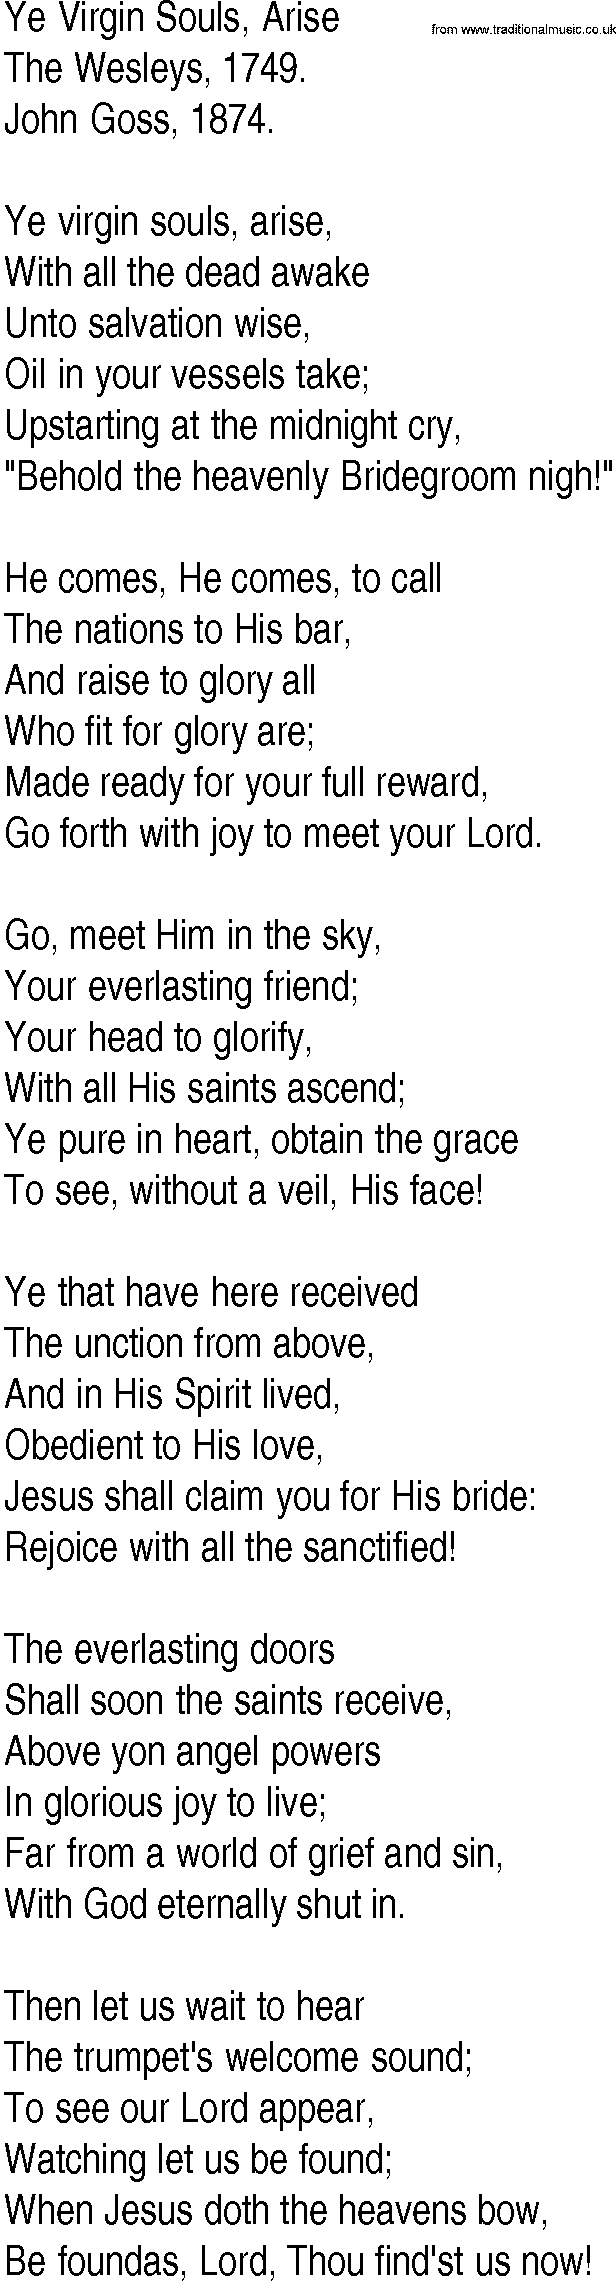 Hymn and Gospel Song: Ye Virgin Souls, Arise by The Wesleys lyrics